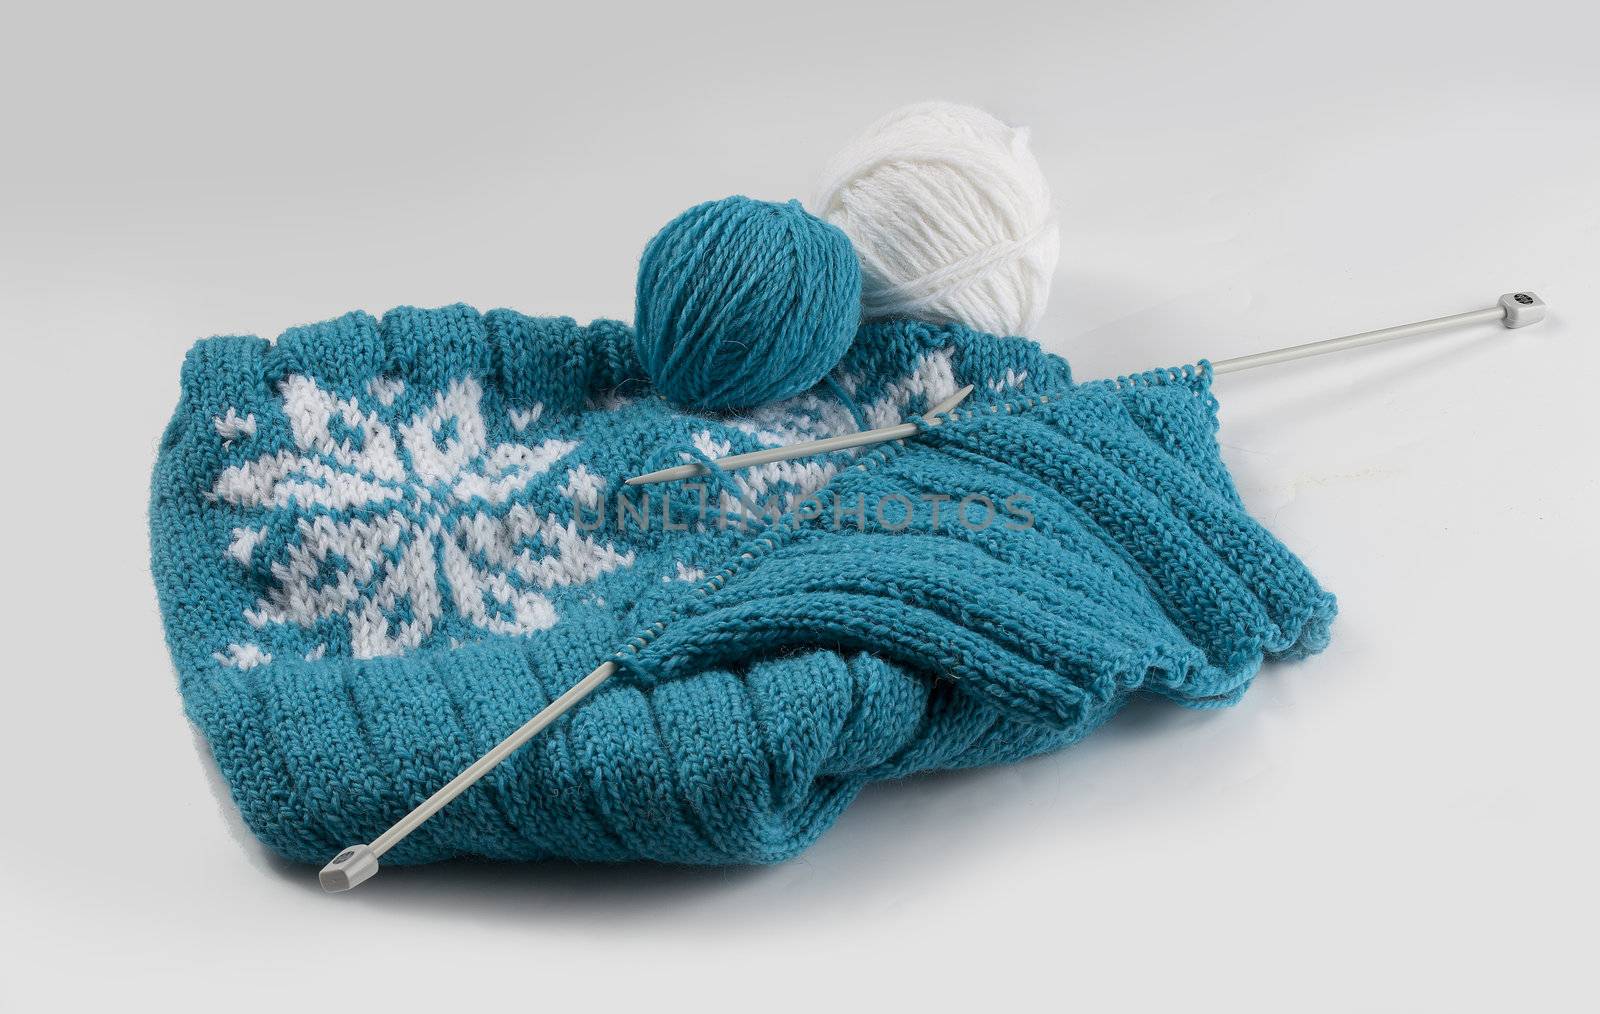 Knitting by Angorius